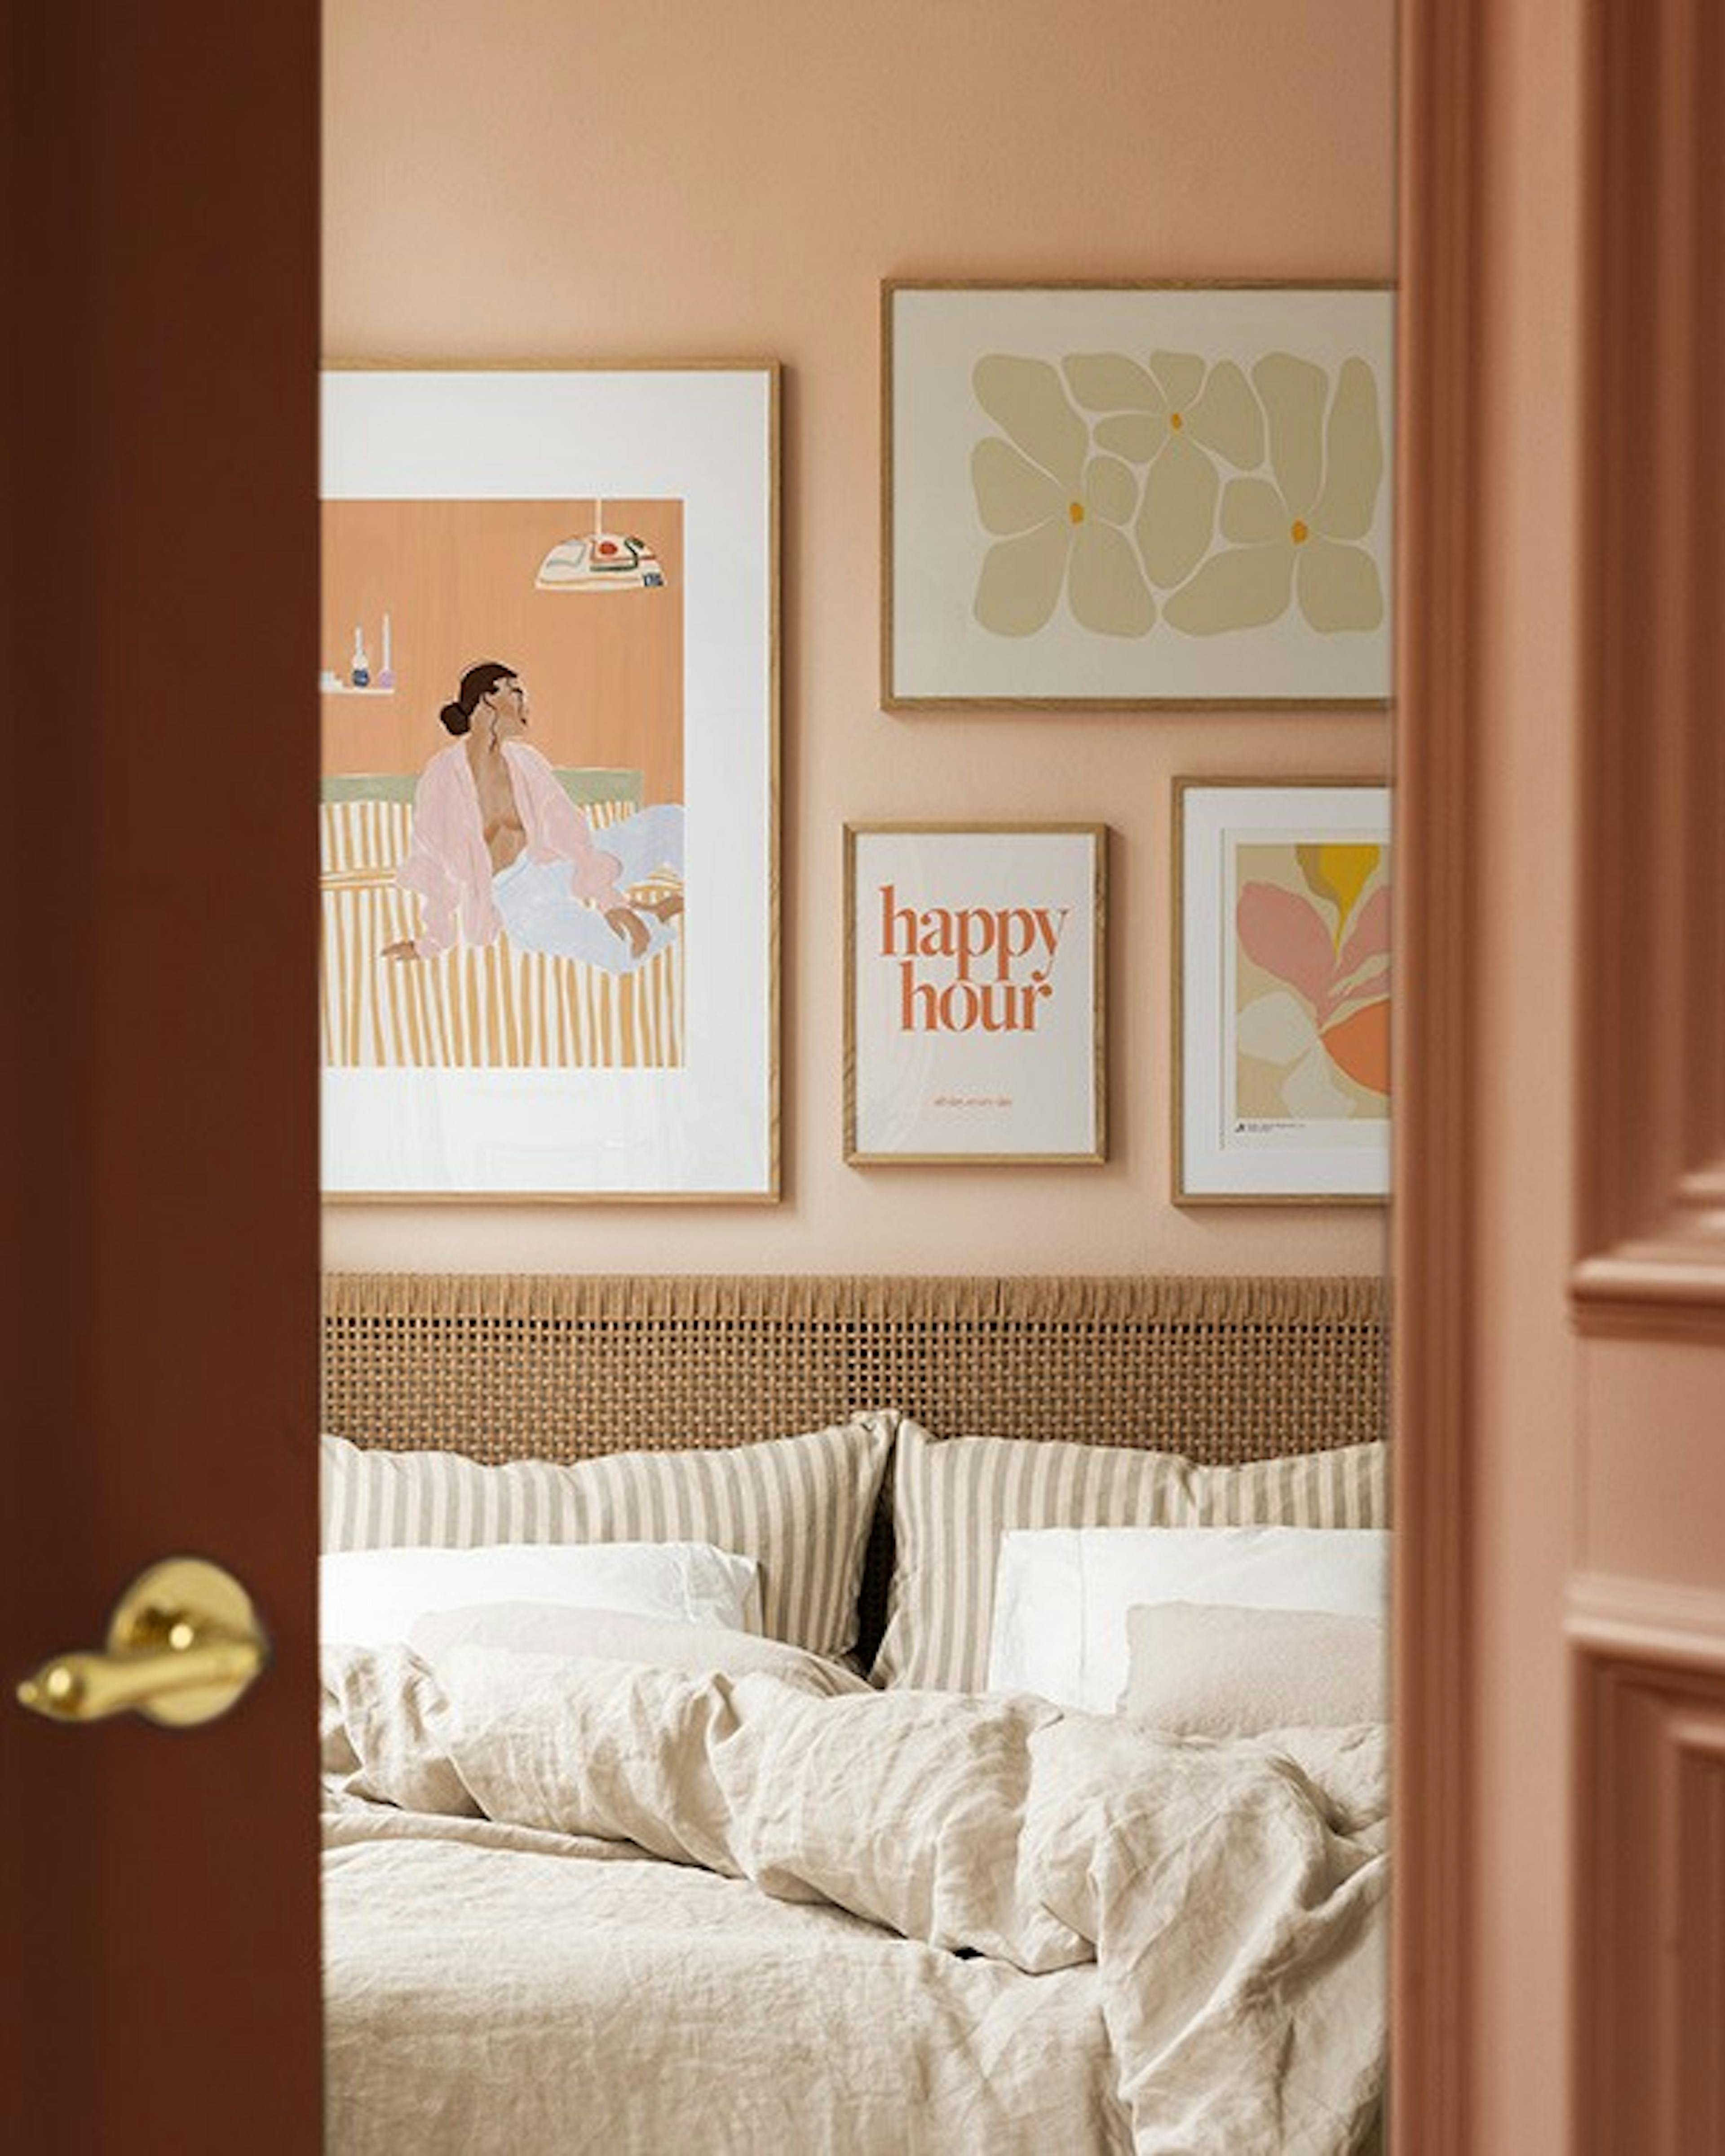 Peachy bedroom galería de pared